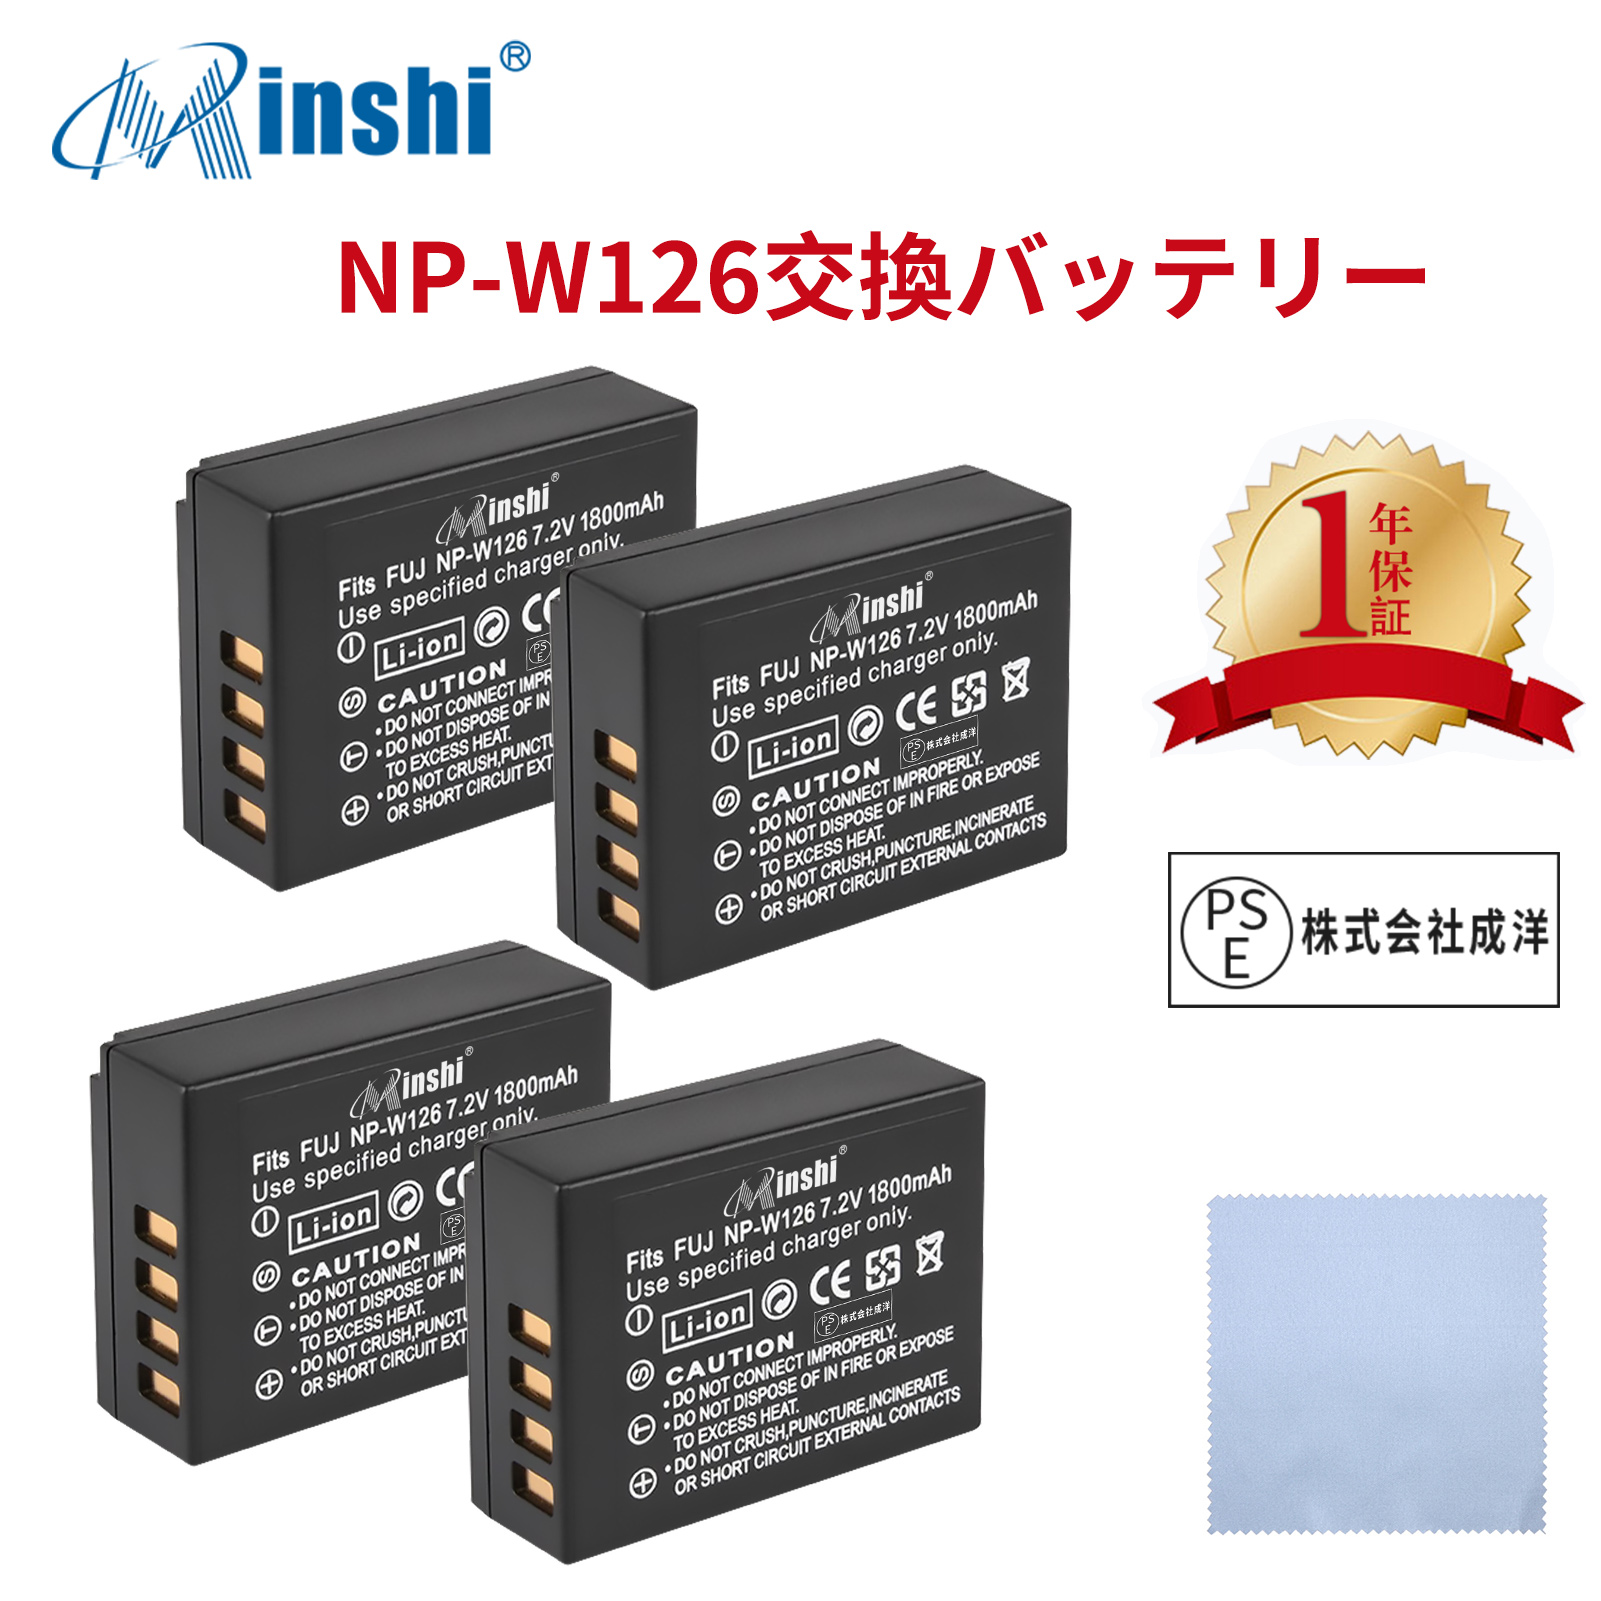 【4個セット&amp;クロス付き】minshi FUJIFILM X-E3【1800mAh 7.2V】PSE認定済 高品質 NP-W126S NP-W126互換バッテリー